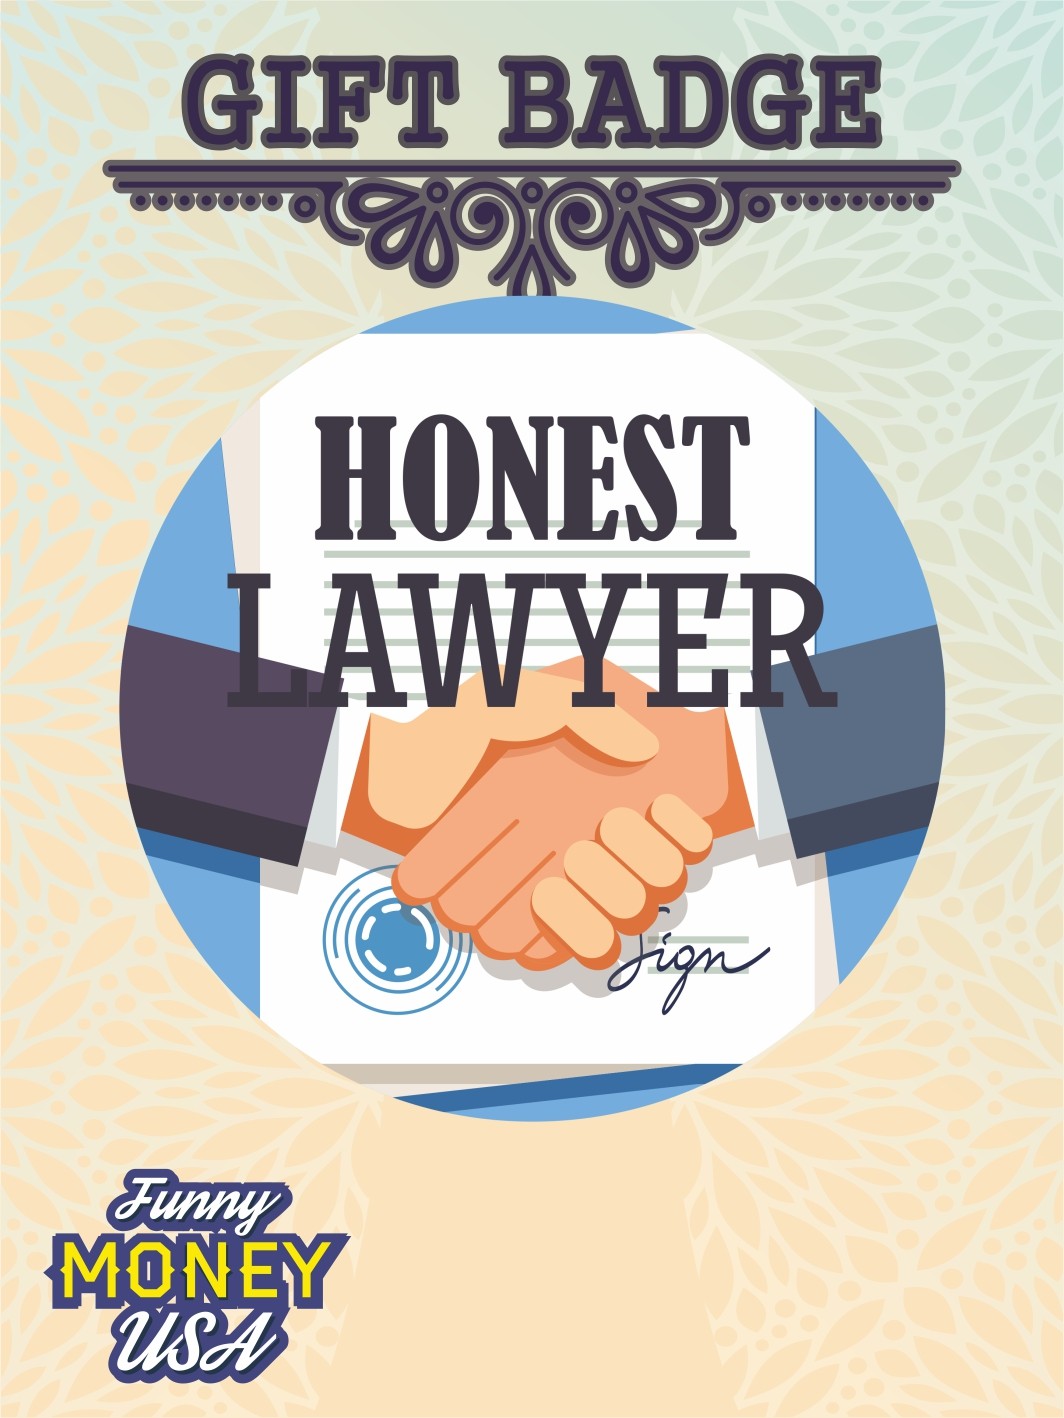 Gift badges "Honest lawyer"